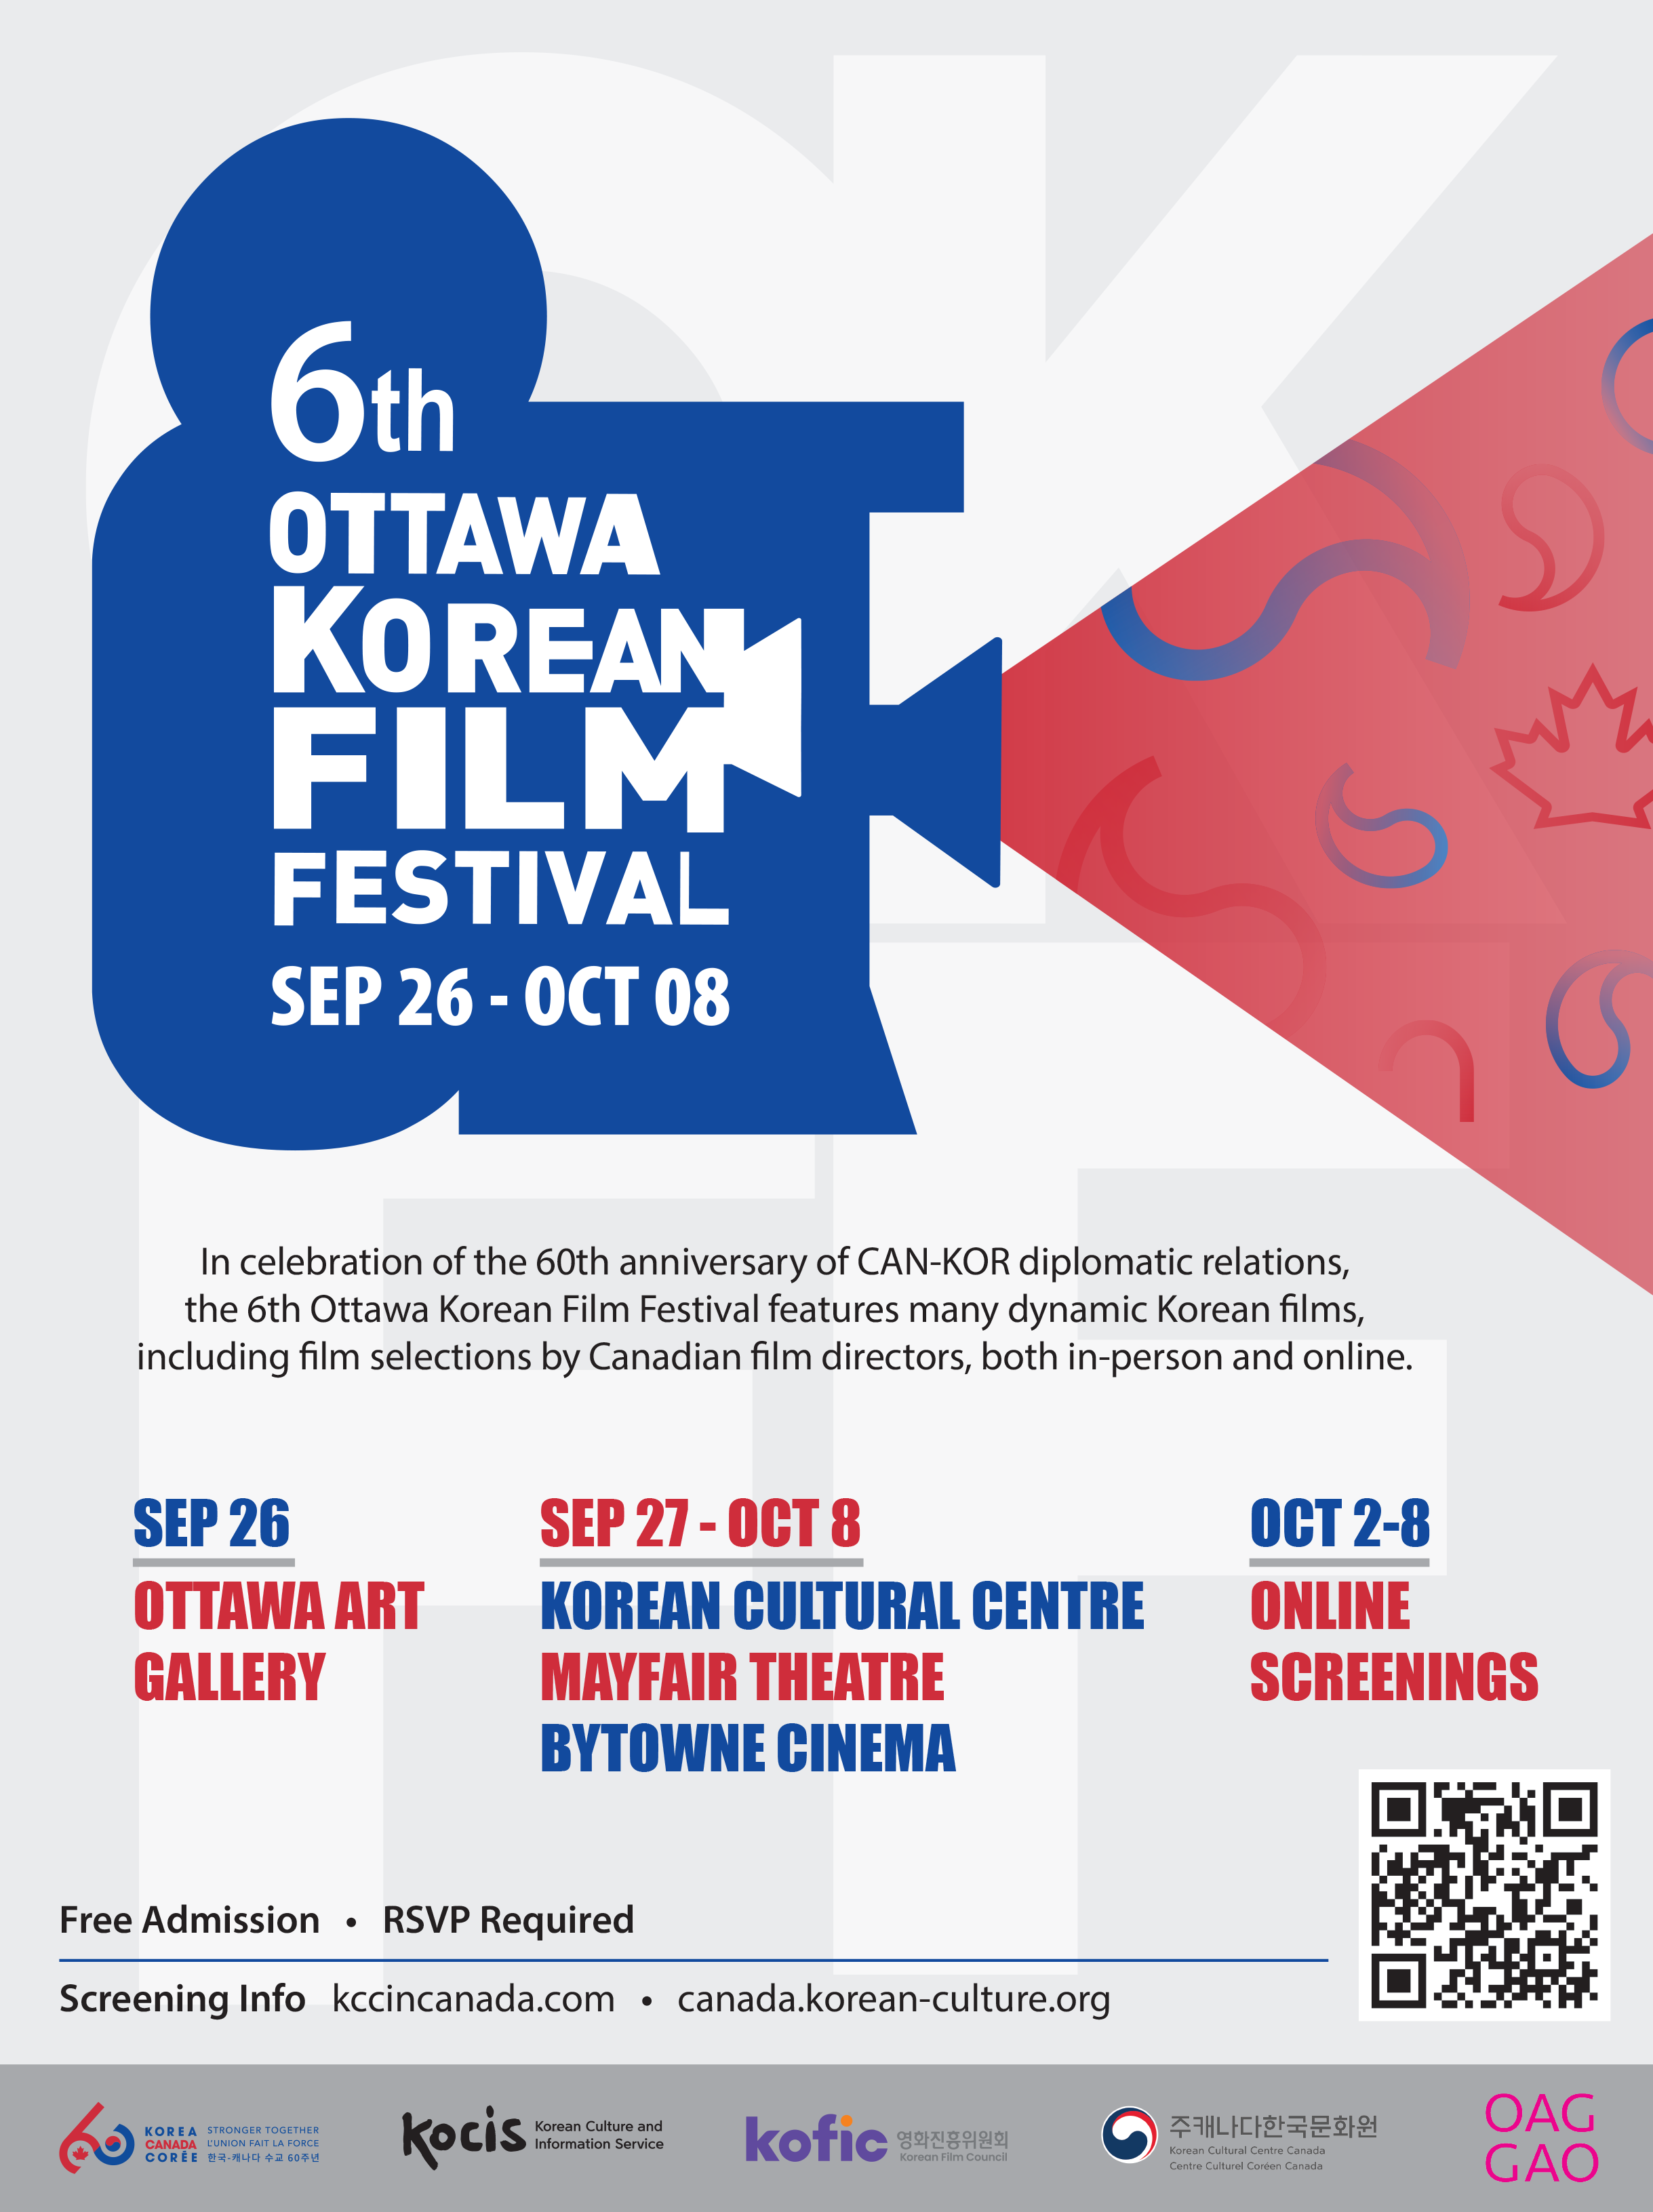 6th Ottawa Korean Film Festival returns to Ottawa